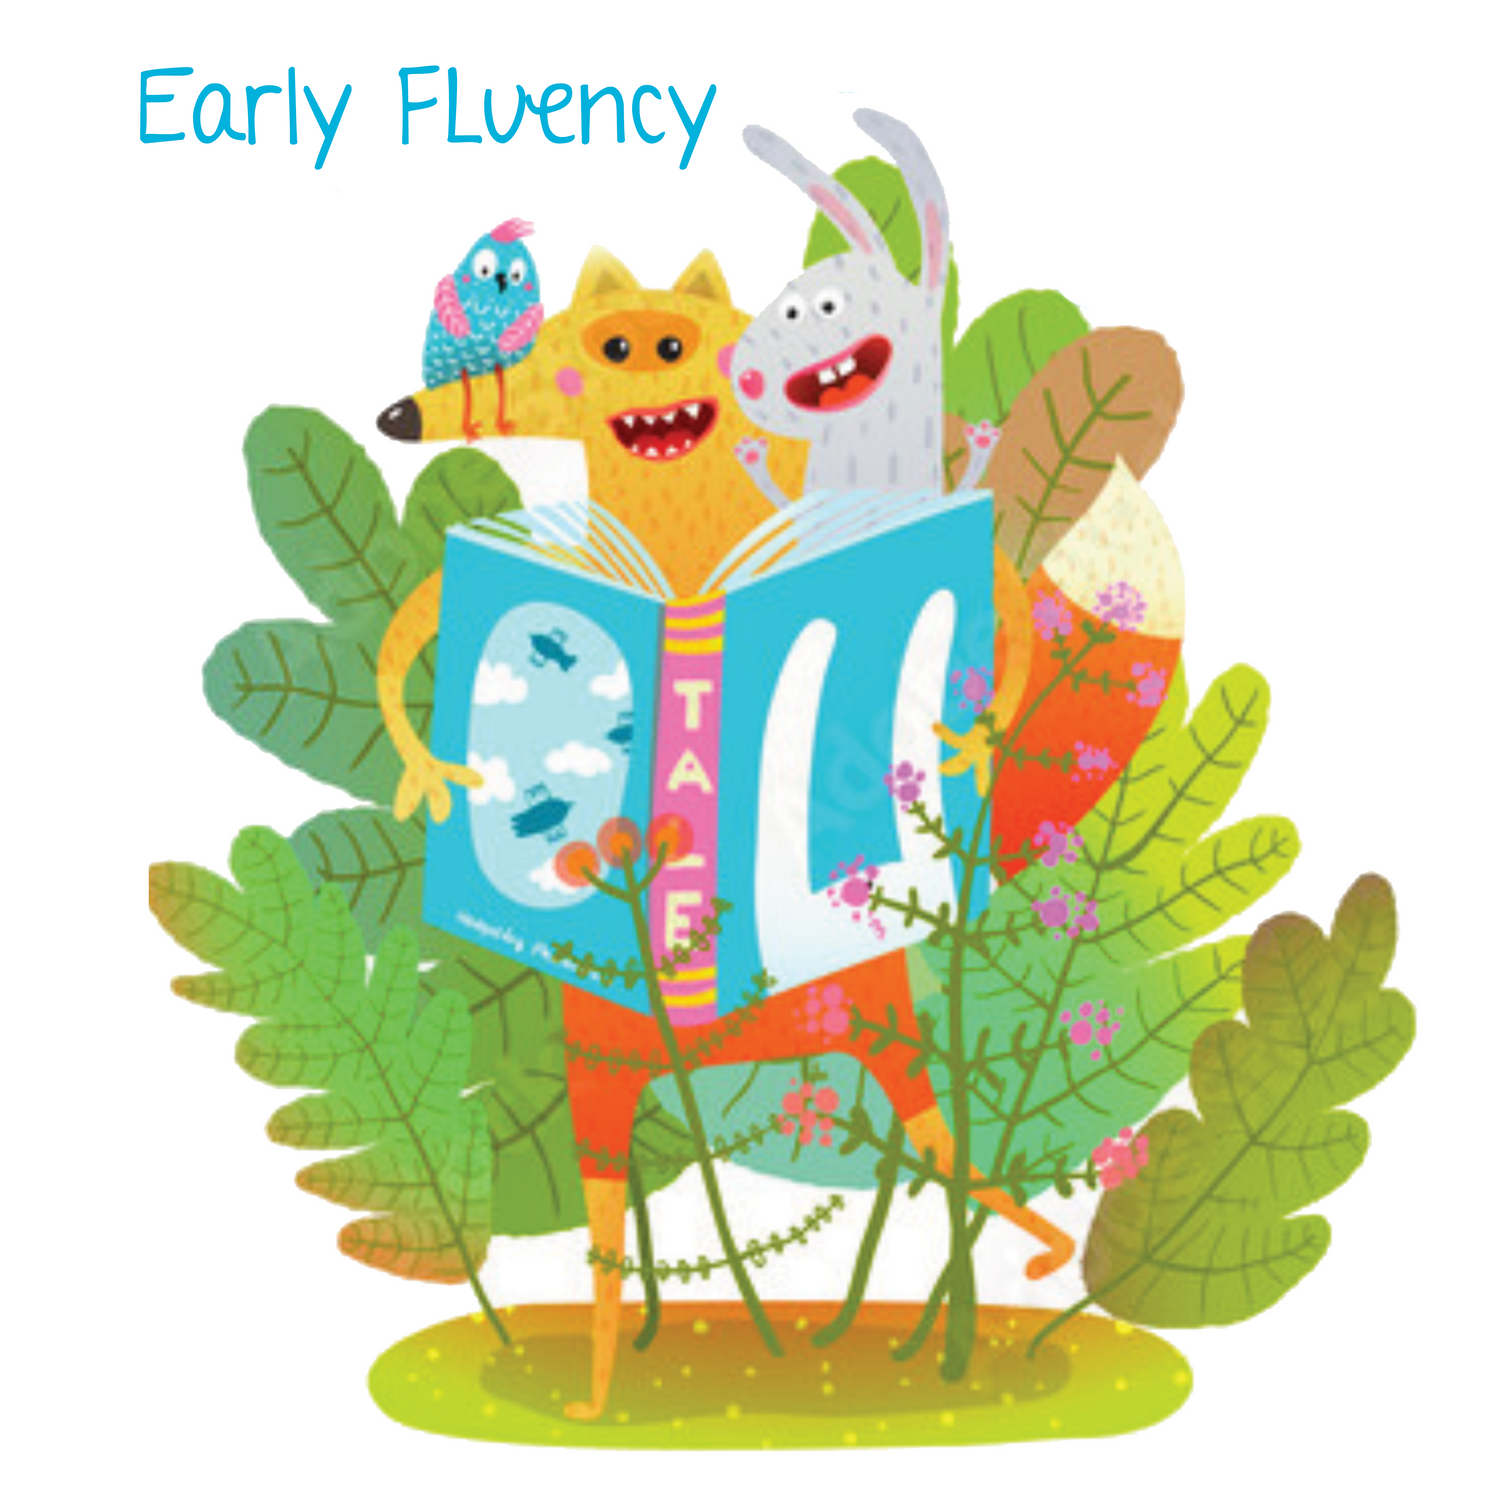 Early fluency